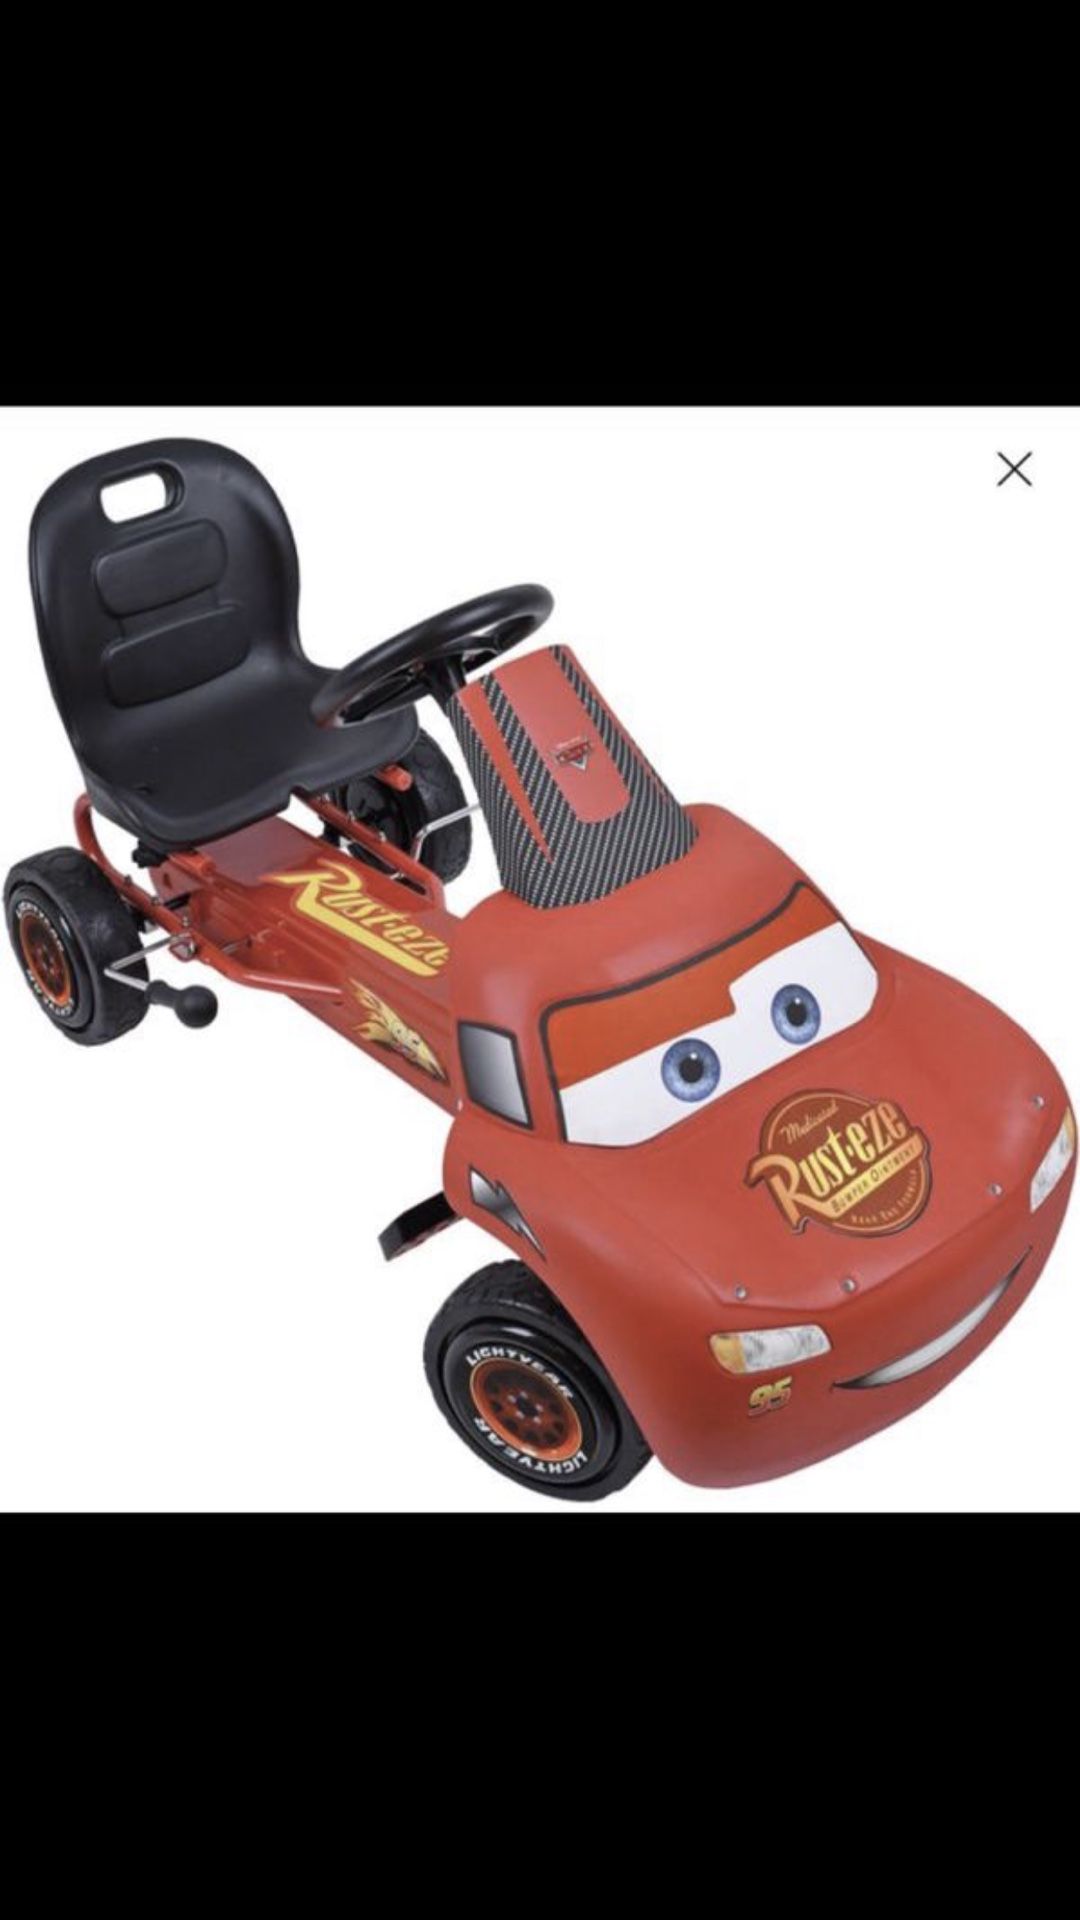 Disney Lightning McQueen Pedal Go Kart Brand New